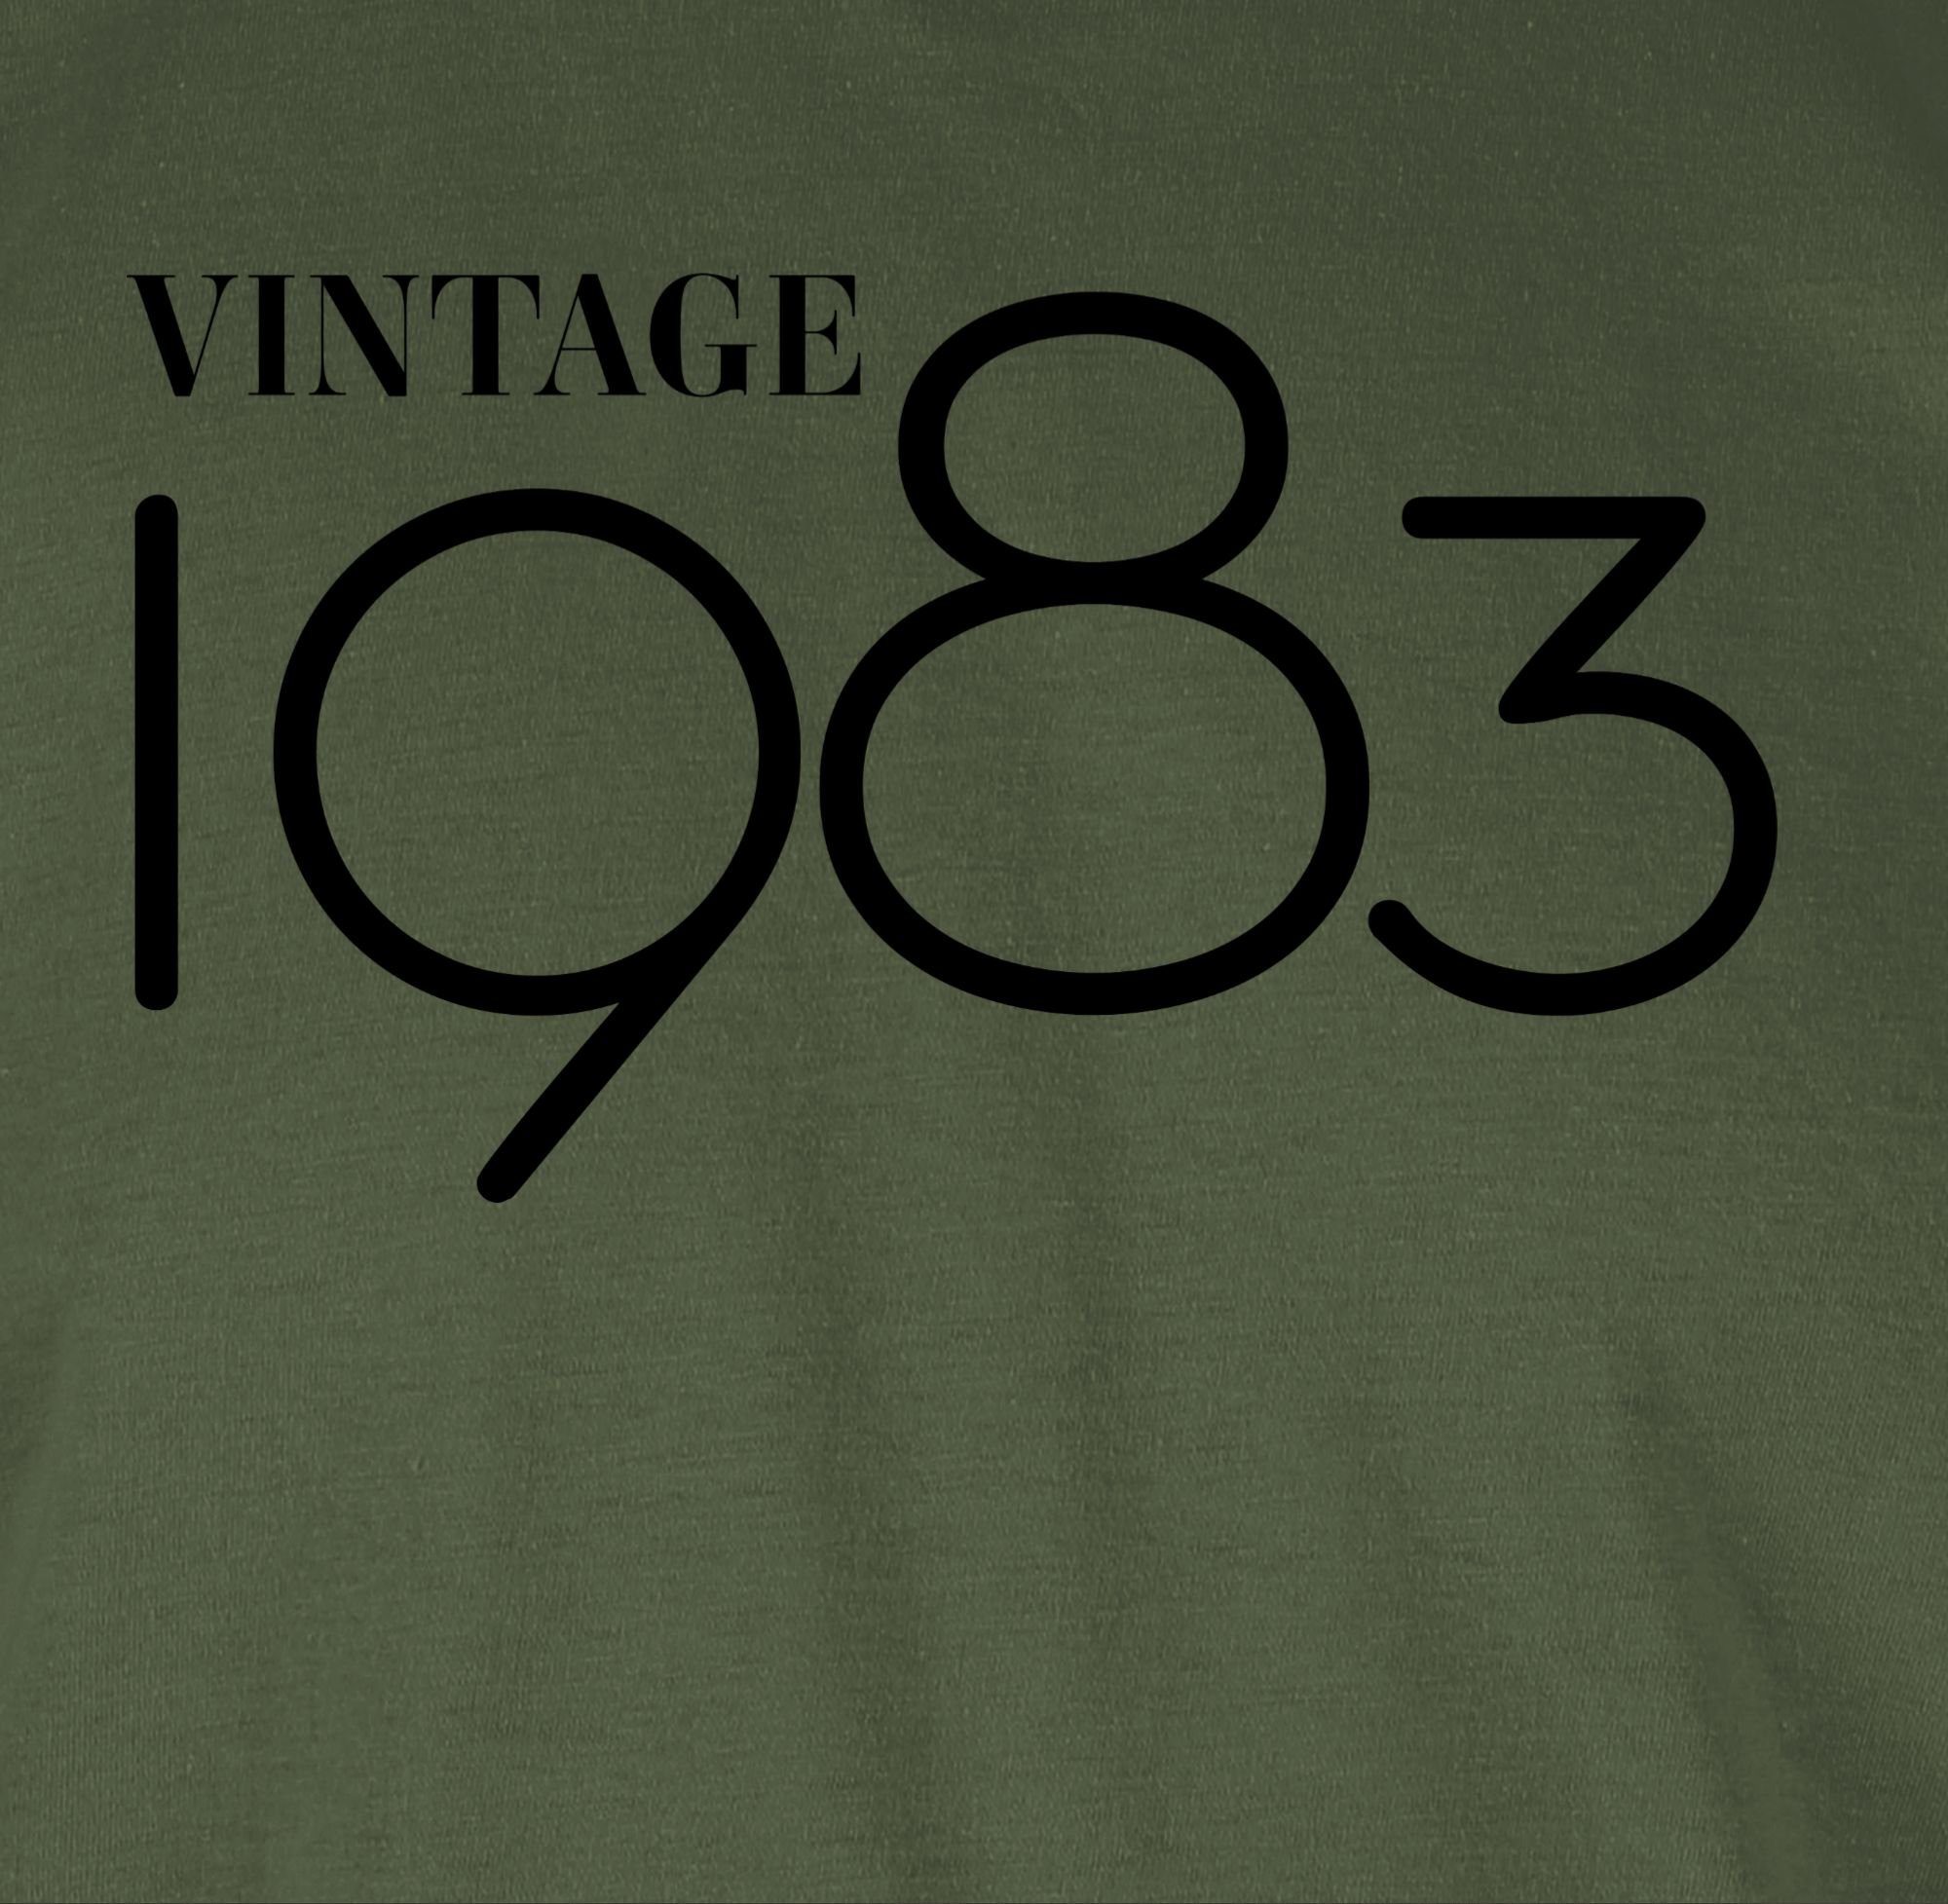 Vintage 1983 Army Geburtstag 40. 01 schwarz T-Shirt Shirtracer Grün